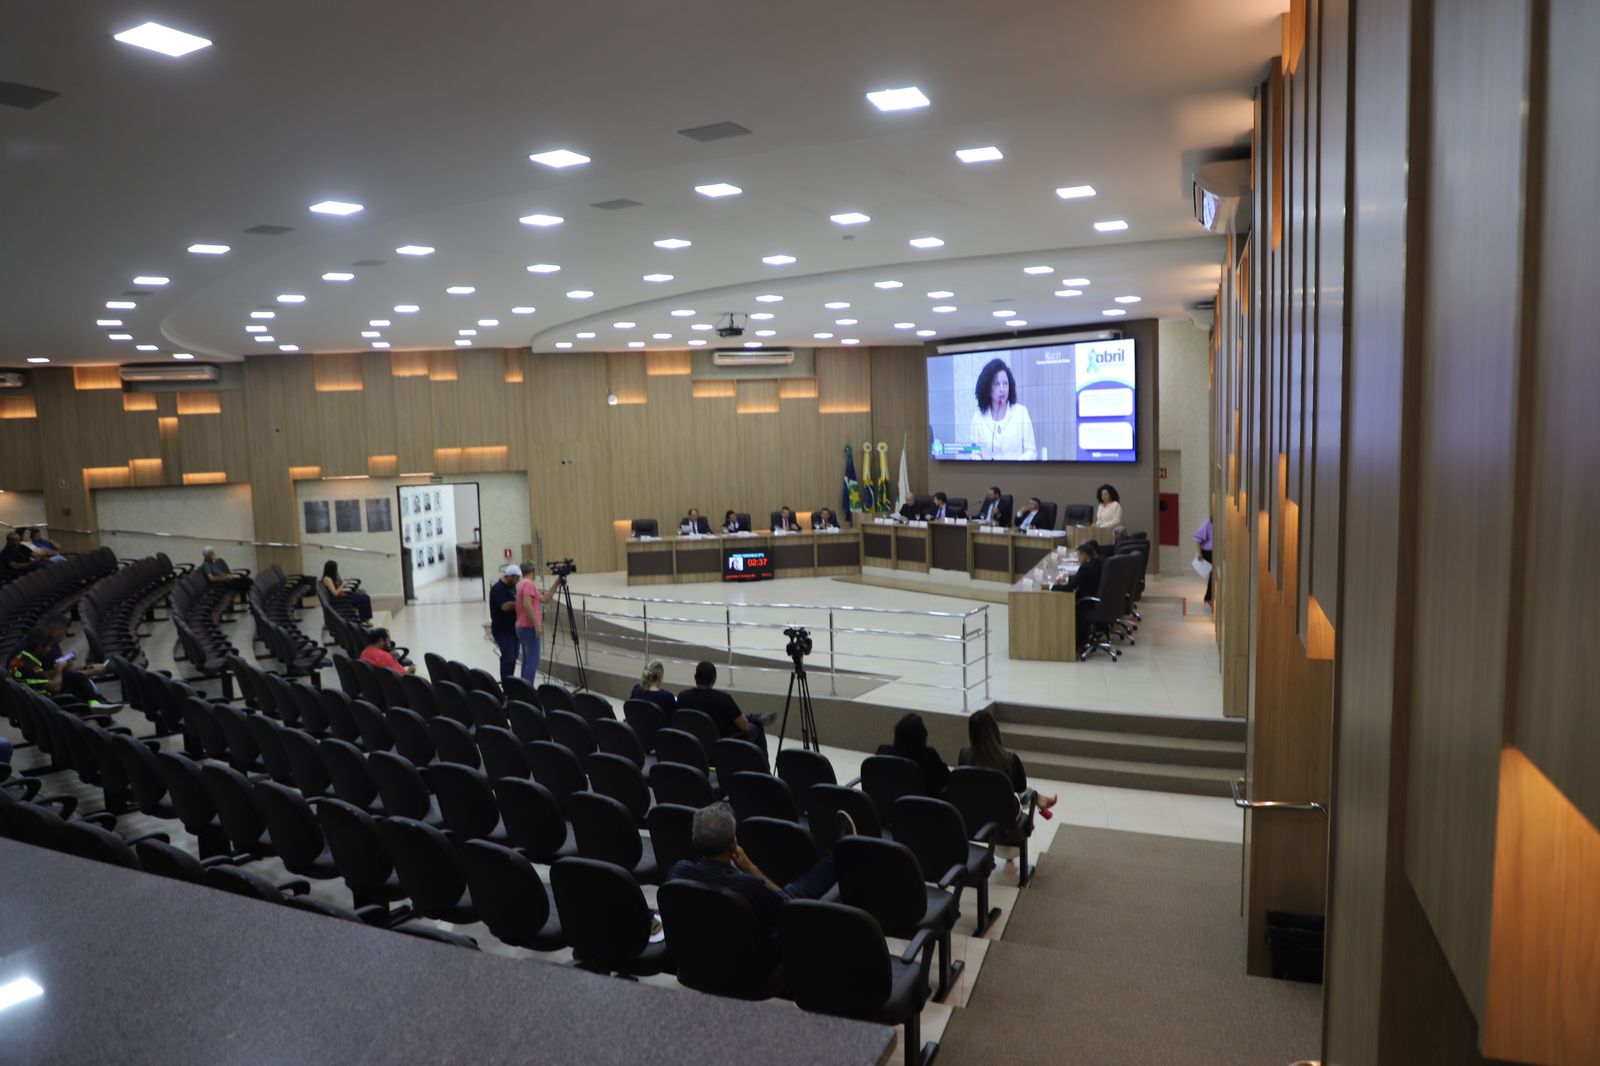 Câmara Municipal de Sinop aprova mudanças no Instituto de Previdência Social em sessão ordinária